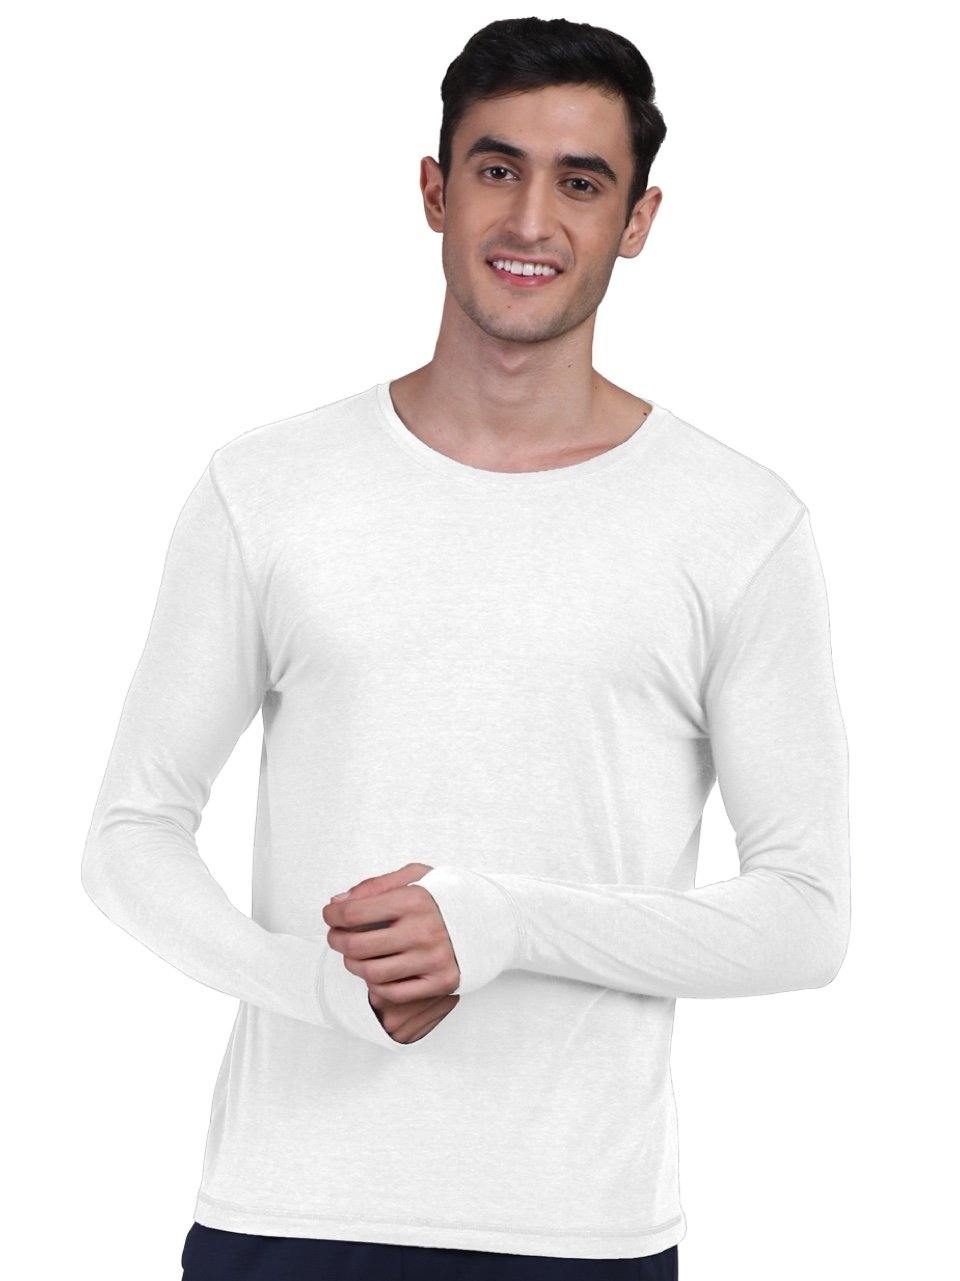 Men's Organic Bamboo Skins (Full Sleeves-Undershirt, Loungewear, Sleepwear) - Pack of 2 - freecultr.com